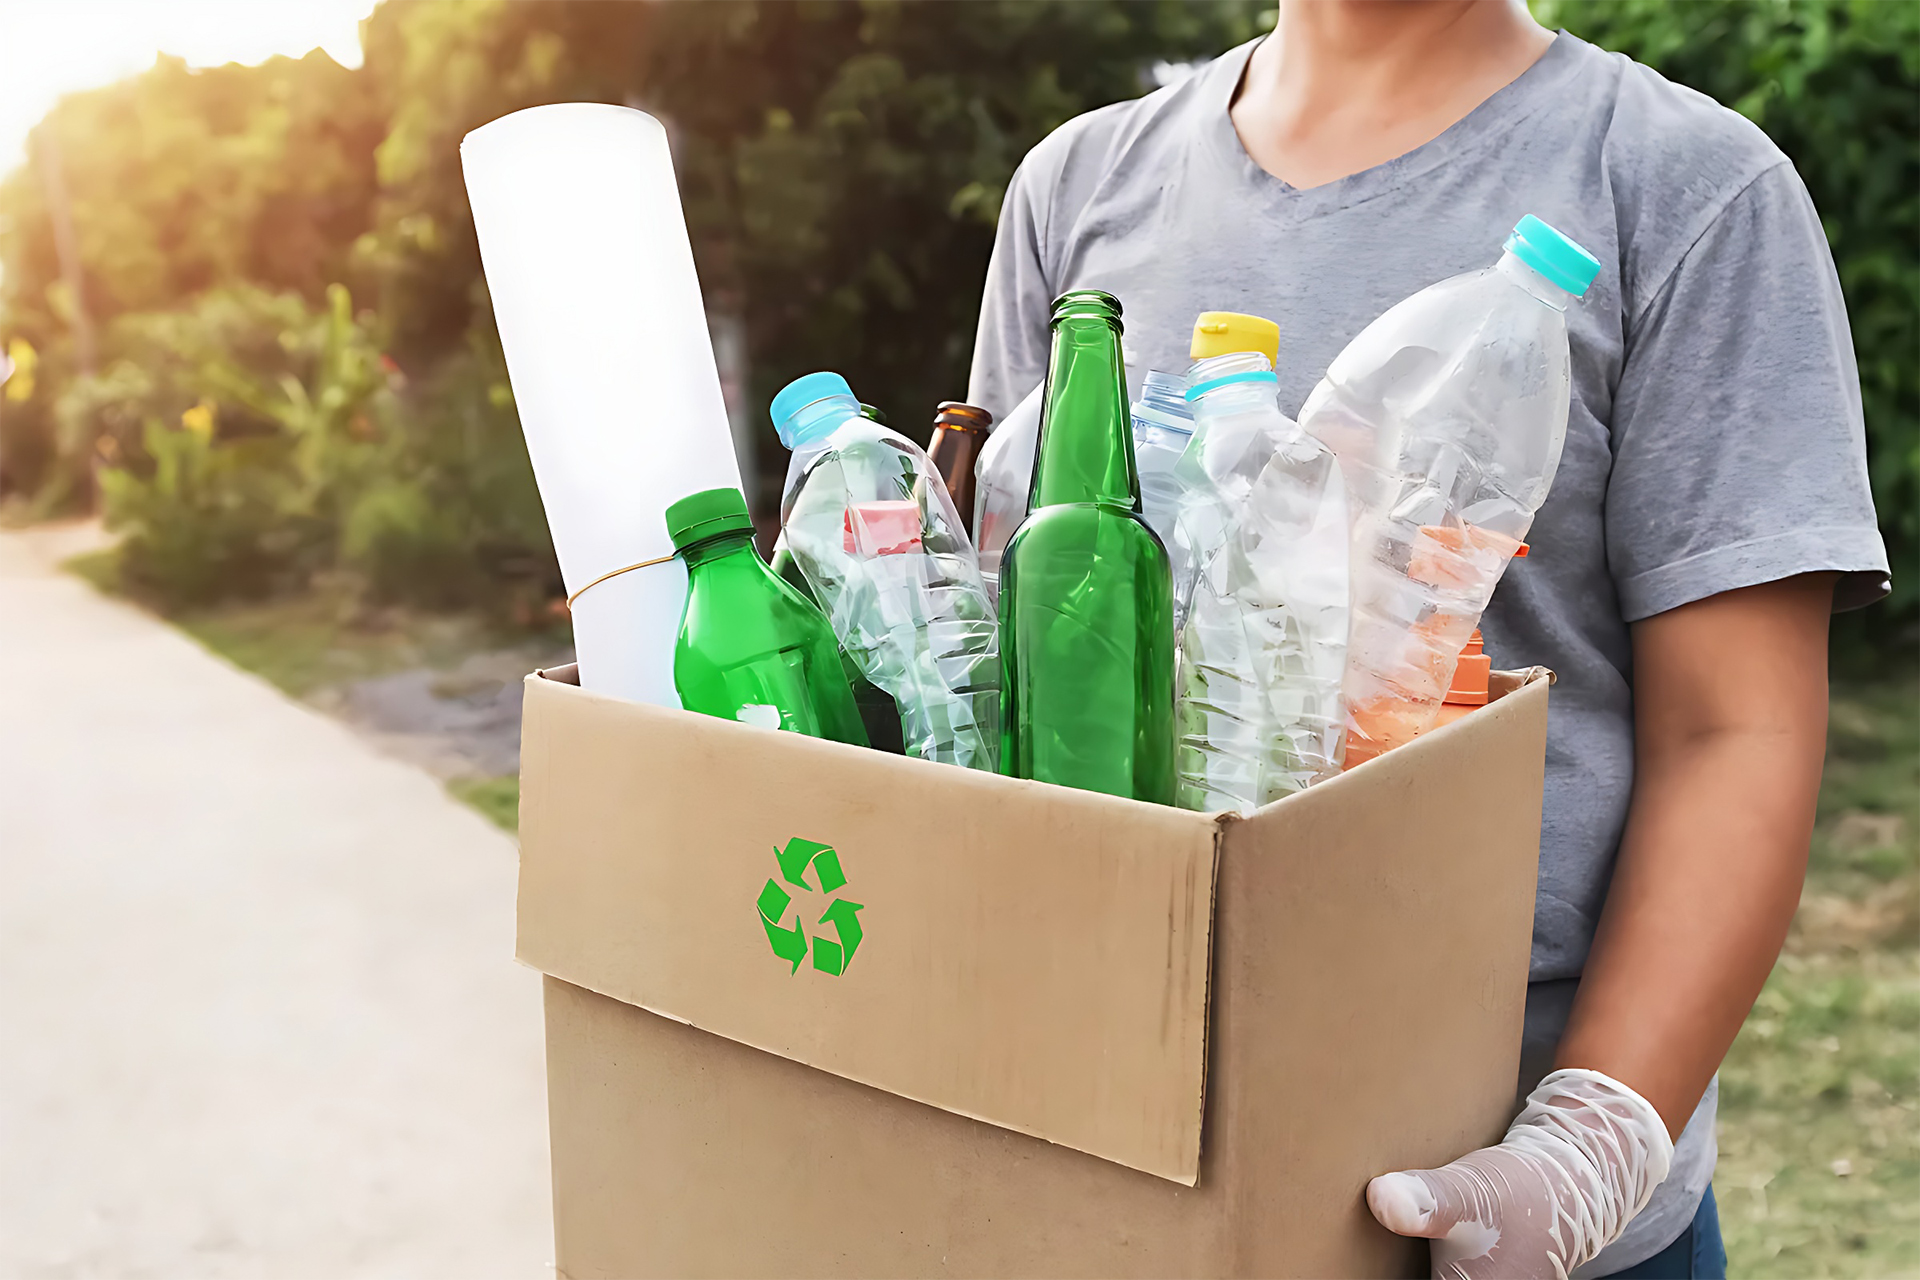 Desvendando o Conceito de Reciclagem, como praticar e transformar o mundo com pequenas atitudes sustentáveis